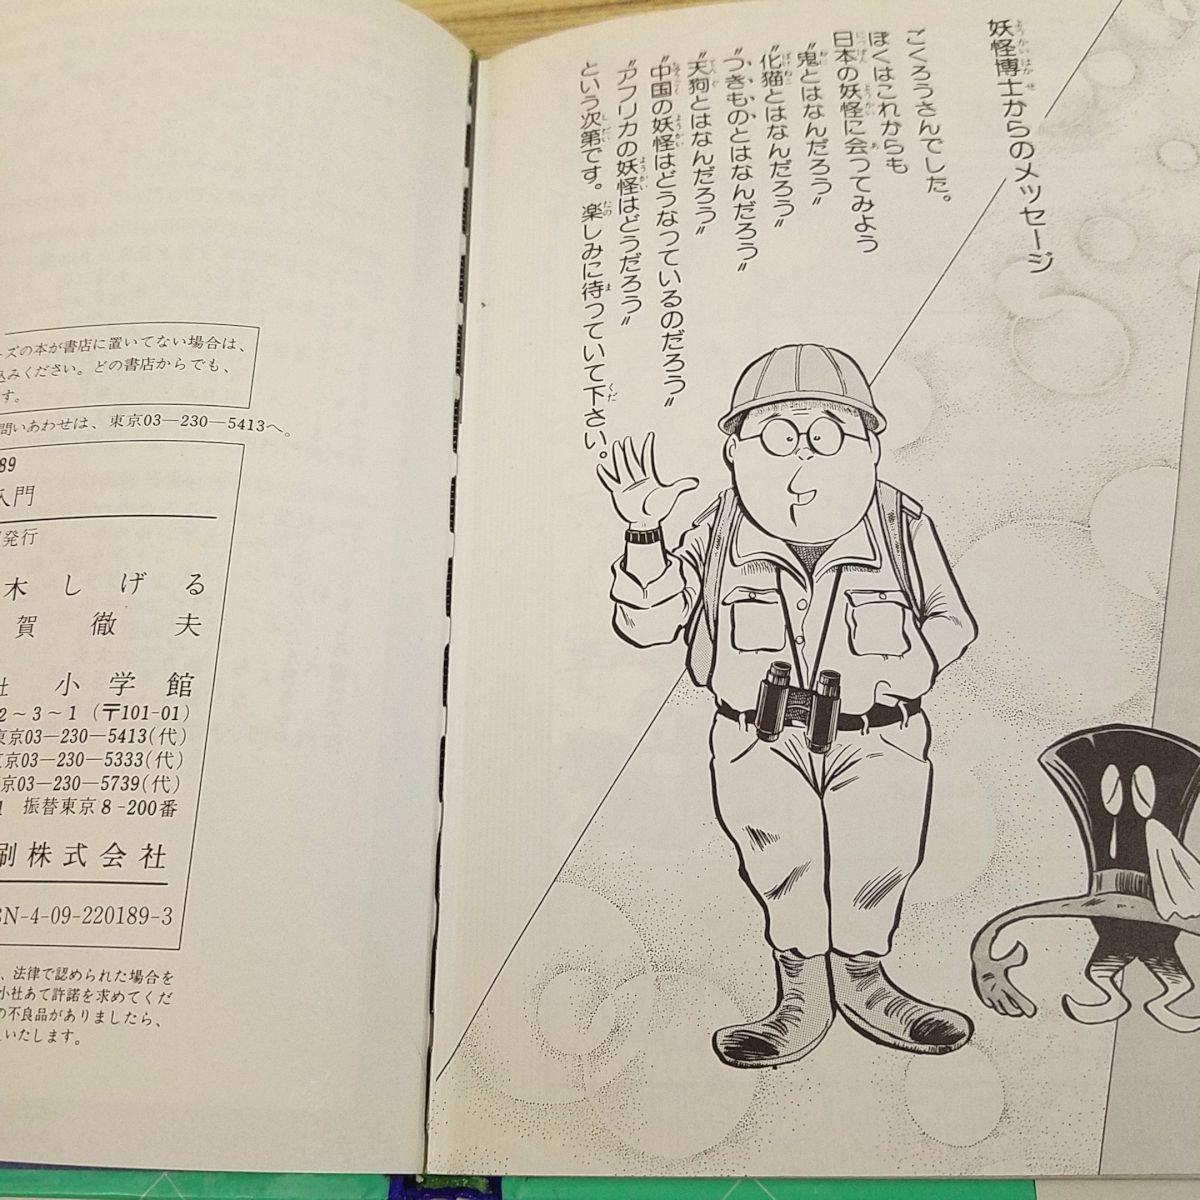 ..[ вода дерево ....... введение (1989 год 8 месяц первая версия no. 1.)( царапина есть )] Shogakukan Inc. введение различные предметы серии комикс 4 рассказ сбор 